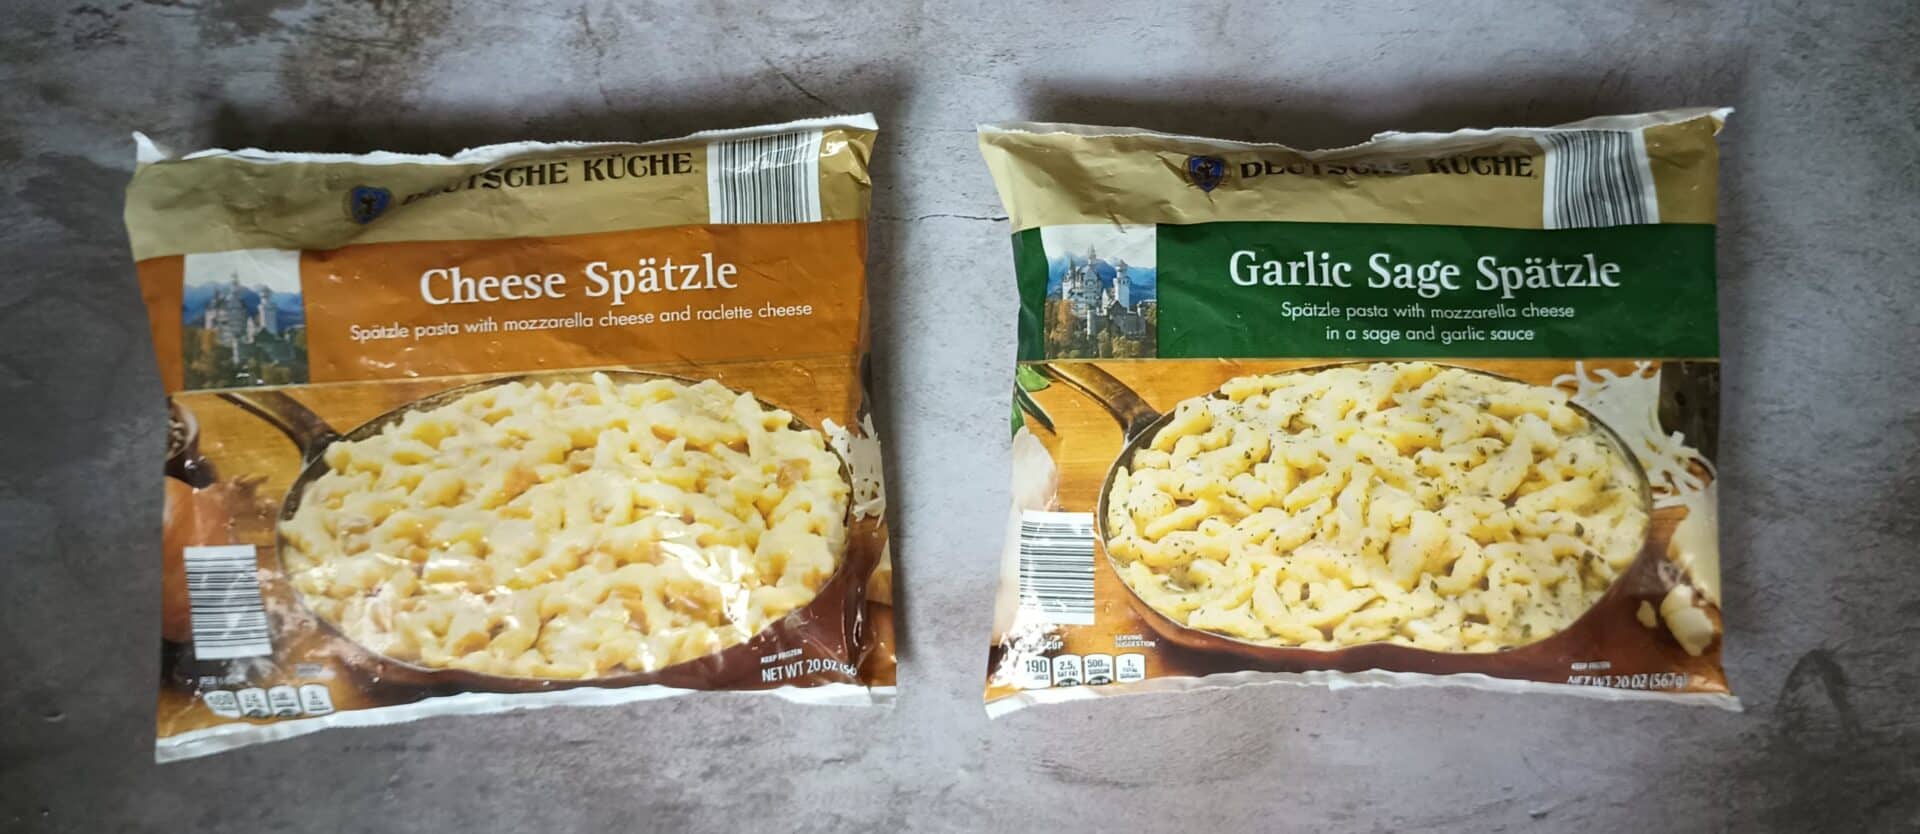 Deutsche Küche Cheese Spaetzle and Deutsche Küche Garlic Sage Spaetzle